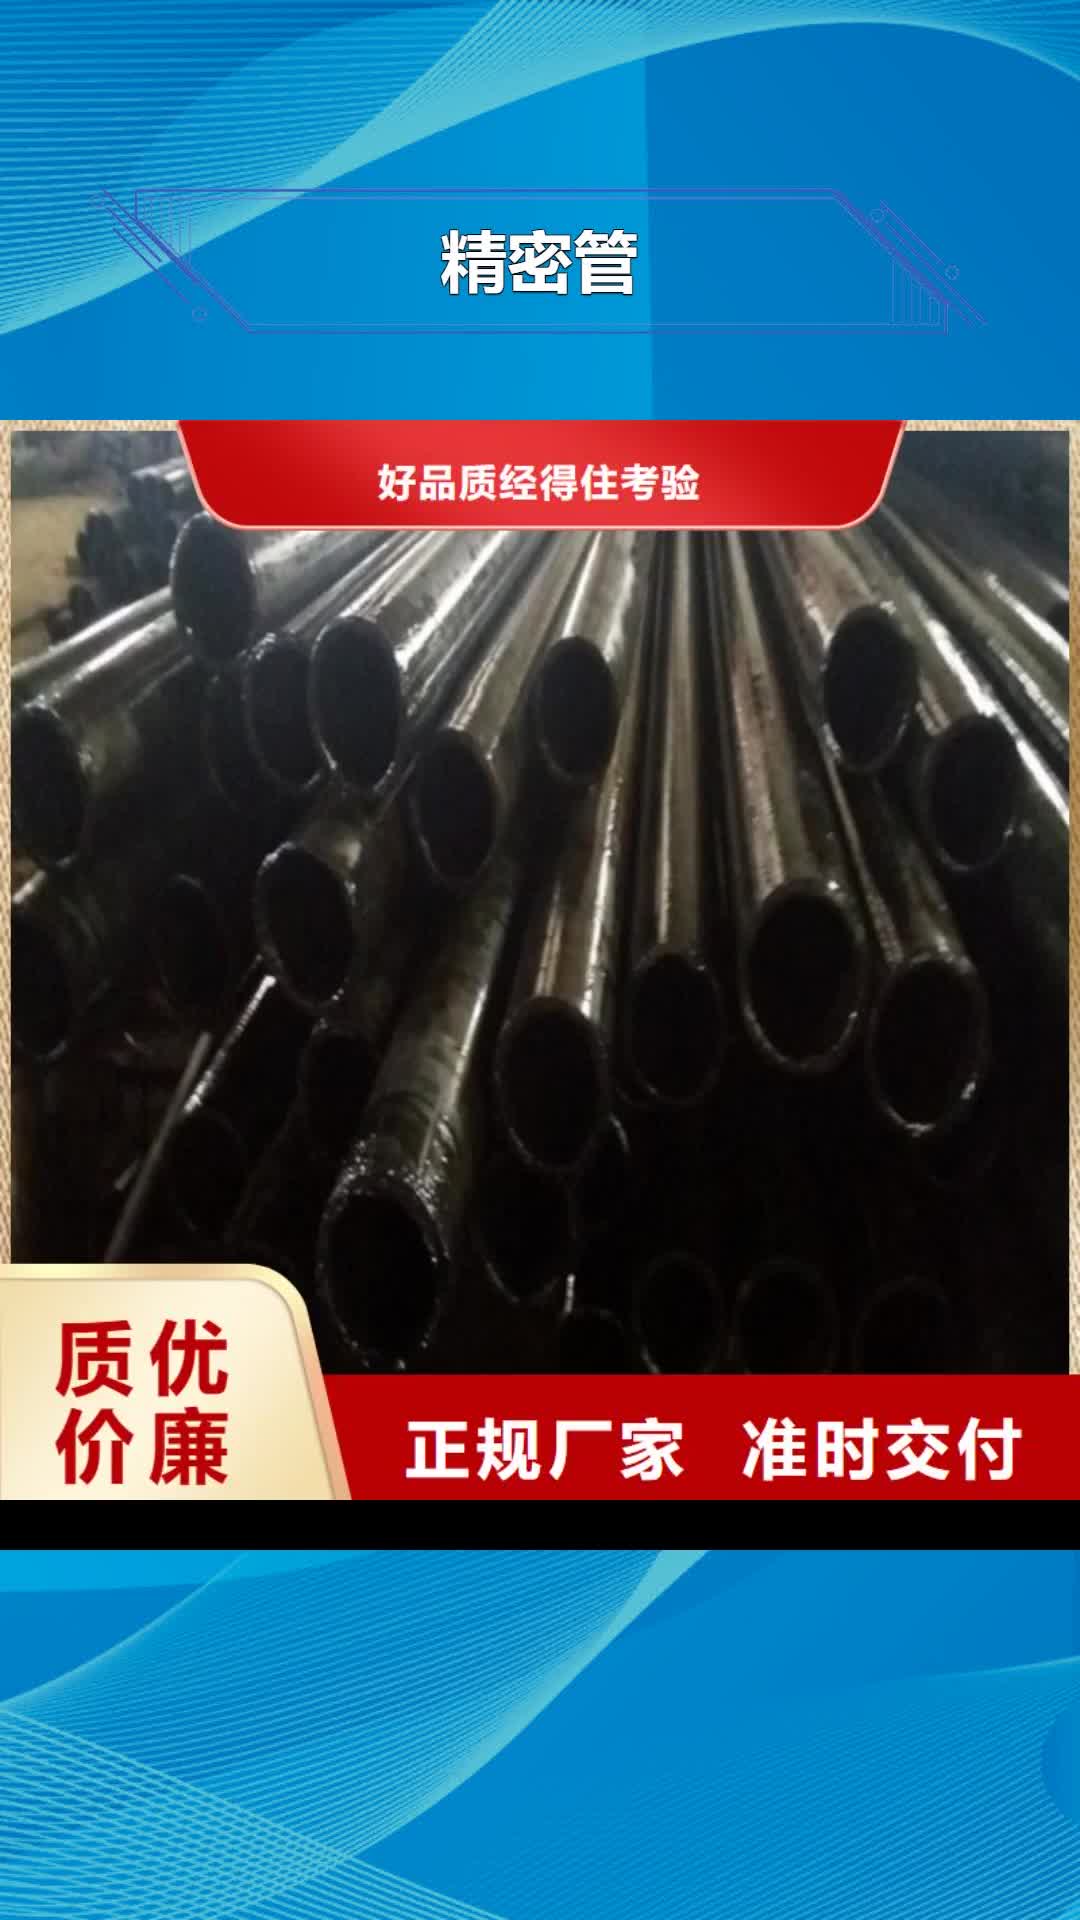 乌海【精密管】,精密无缝钢管生产厂家多年行业经验